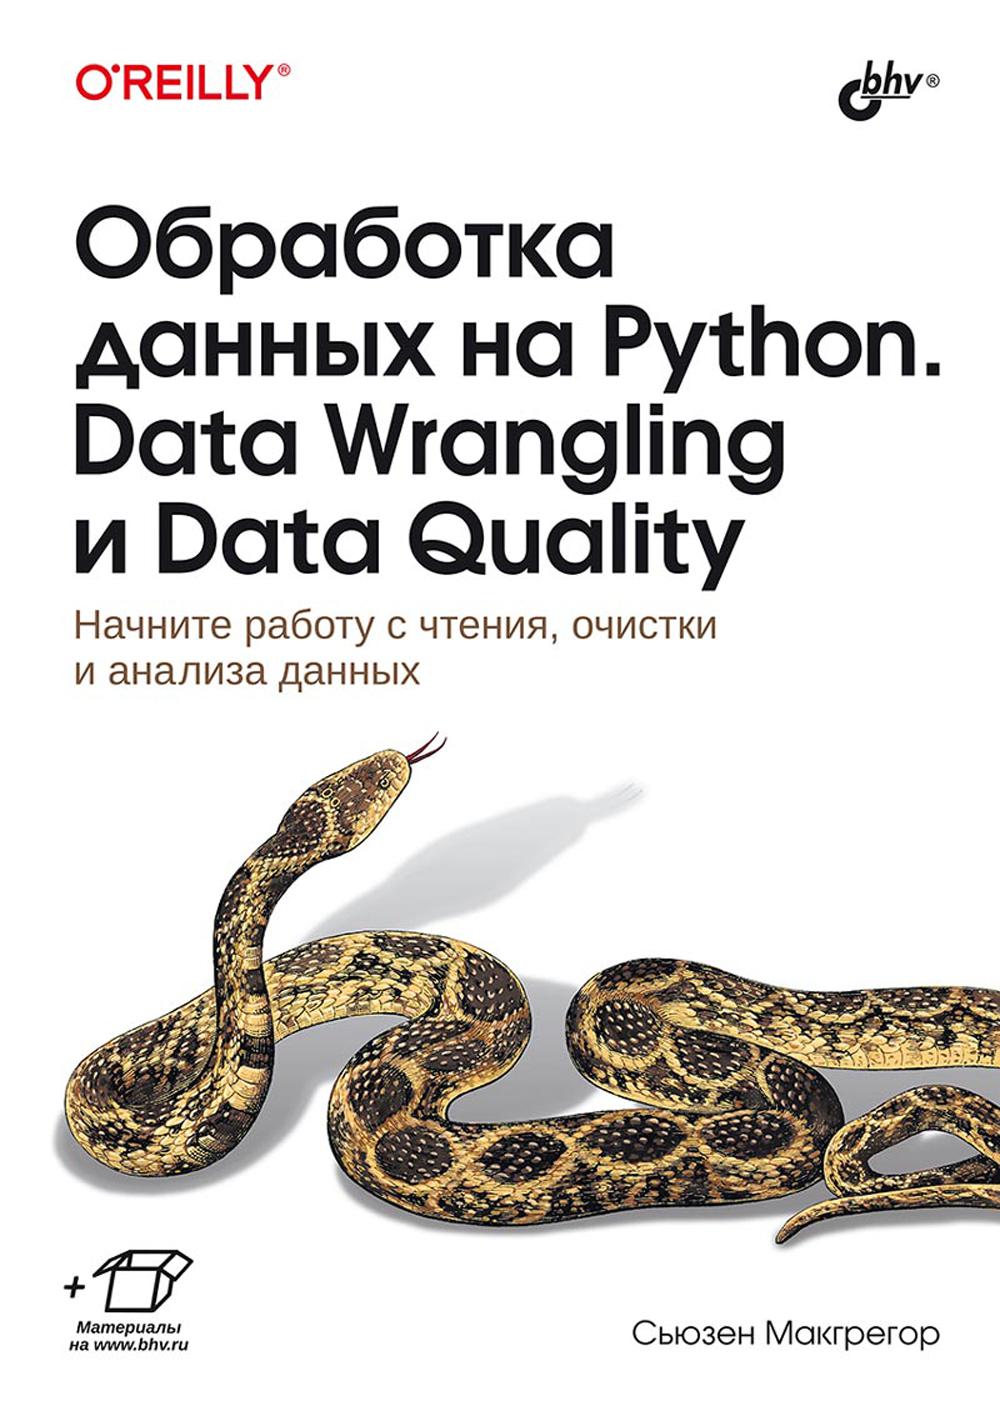    Python. Data Wrangling  Data Quality